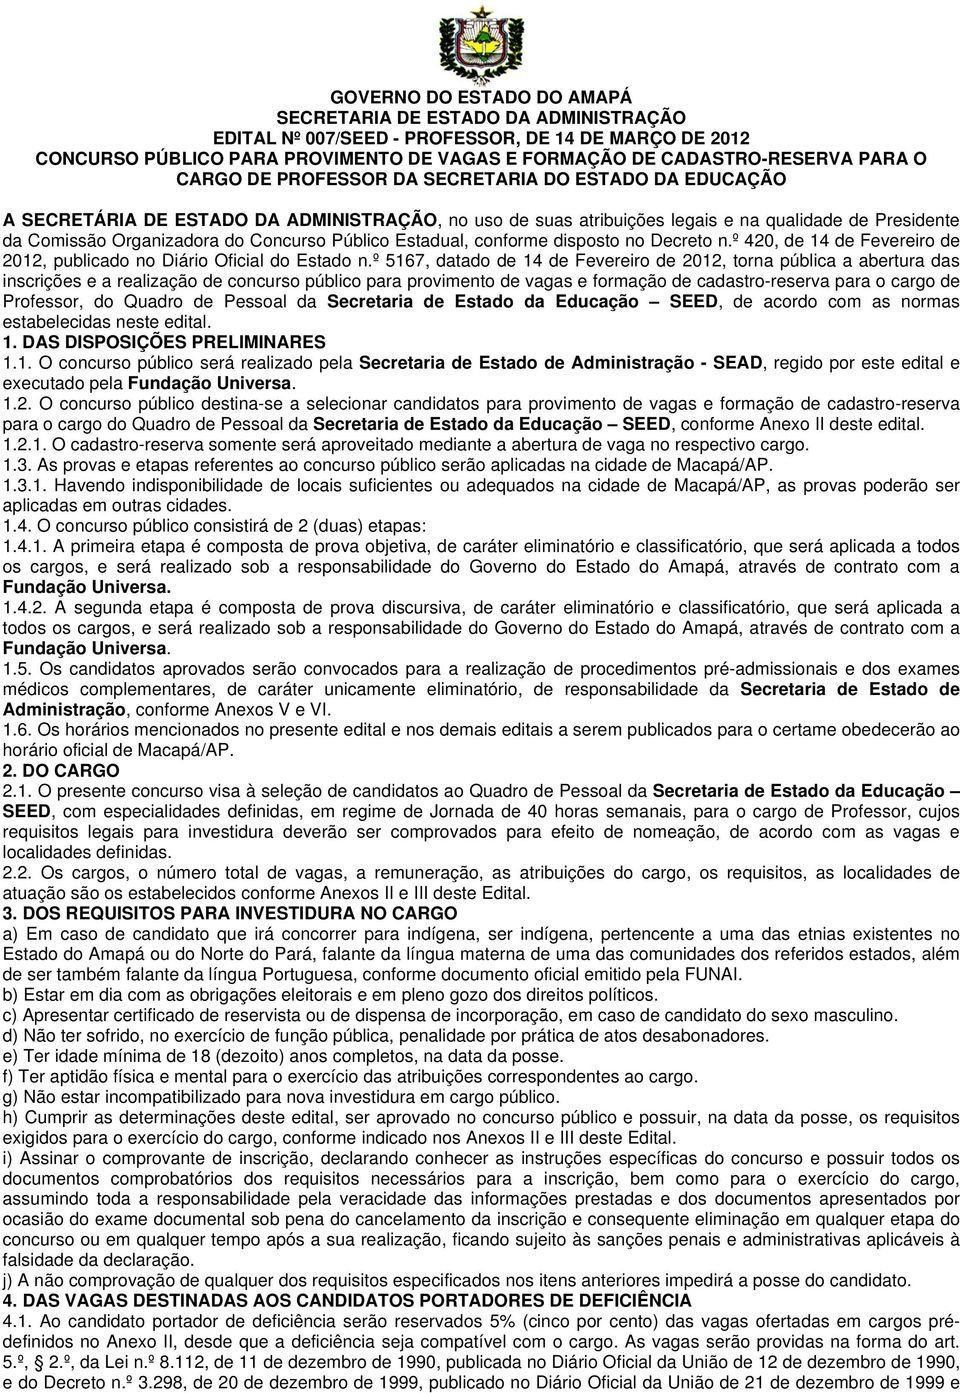 Público Estadual, conforme disposto no Decreto n.º 420, de 14 de Fevereiro de 2012, publicado no Diário Oficial do Estado n.